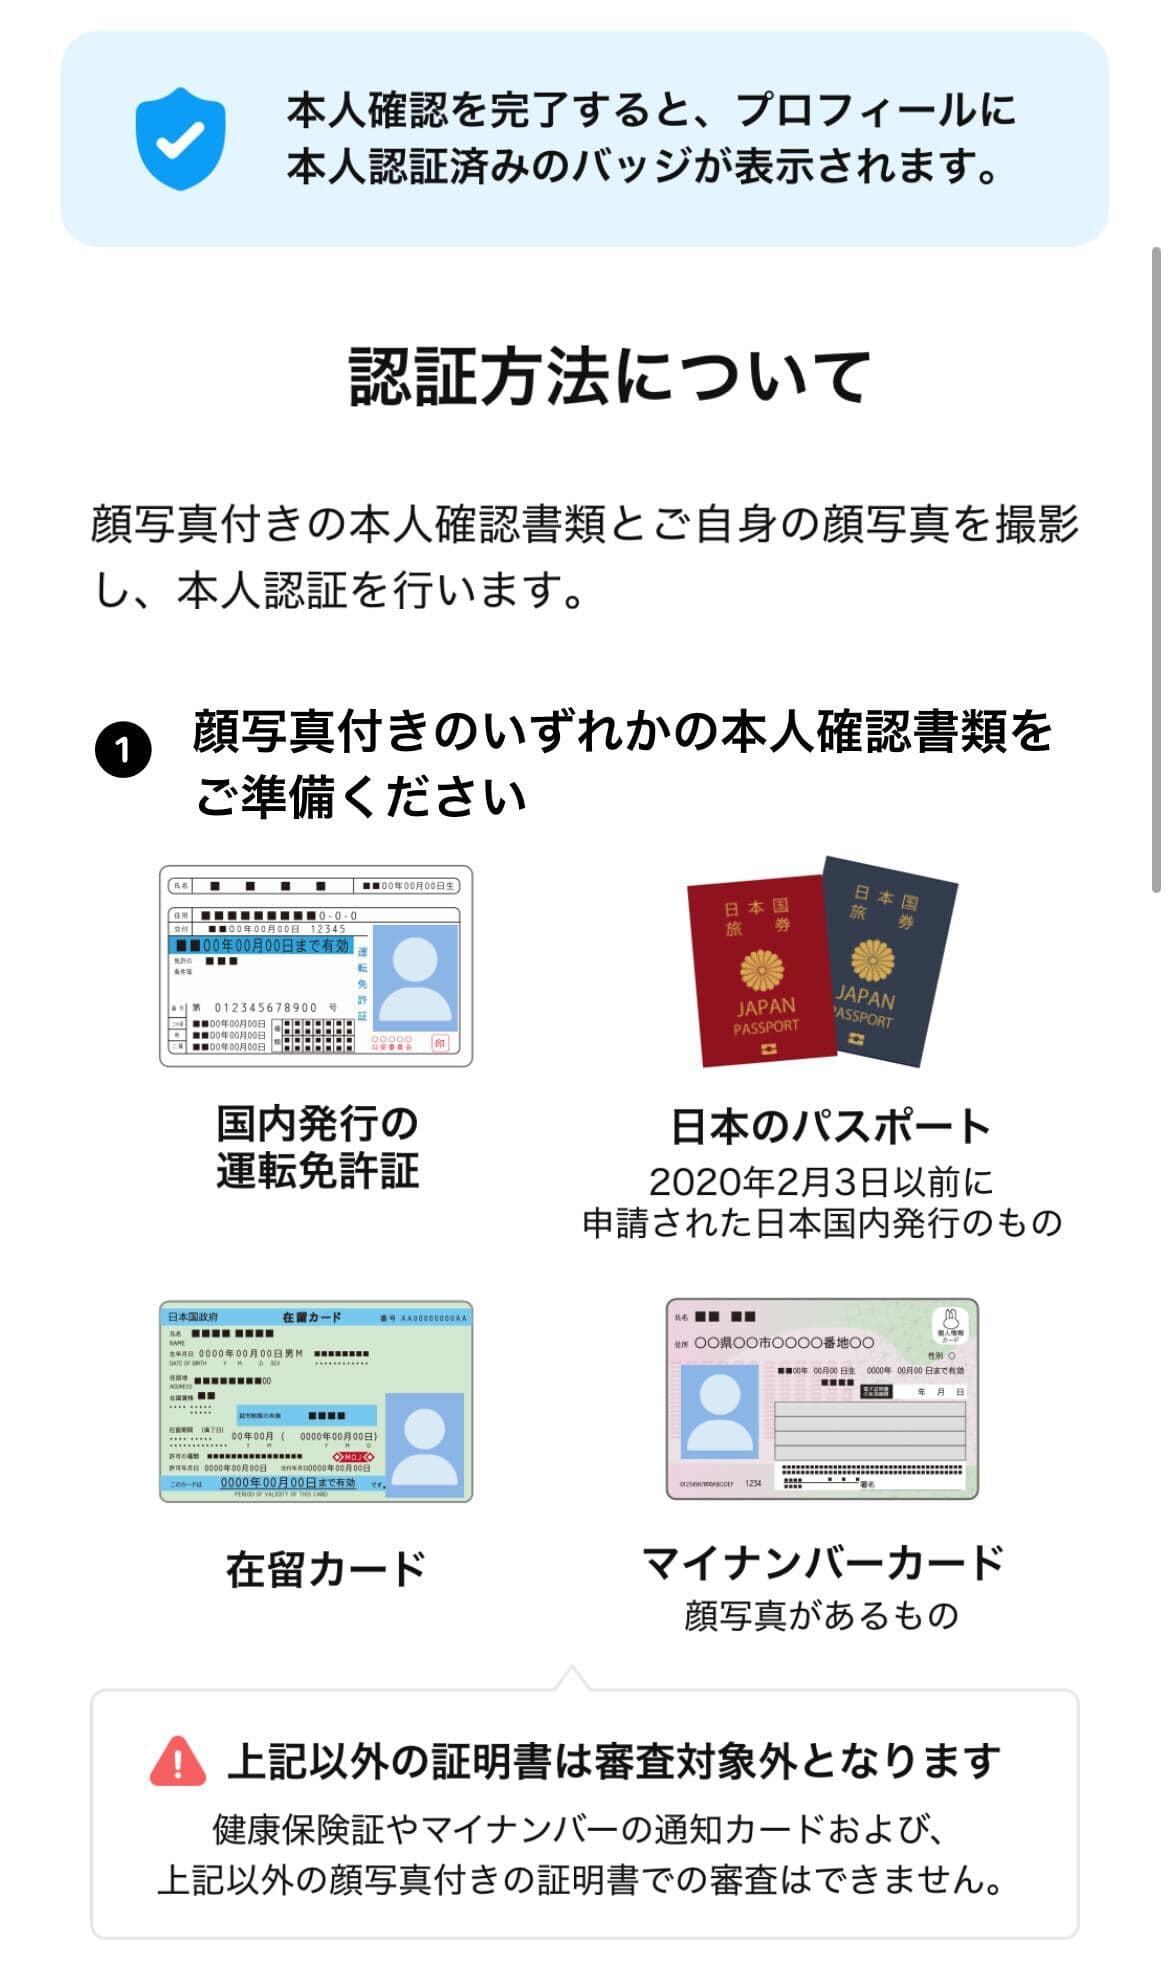 Omiaiの身分証明について 顔写真付きの本人確認書類が必須 ・国内発行の運転免許証 ・日本のパスポート ・在留カード ・マイナンバーカード